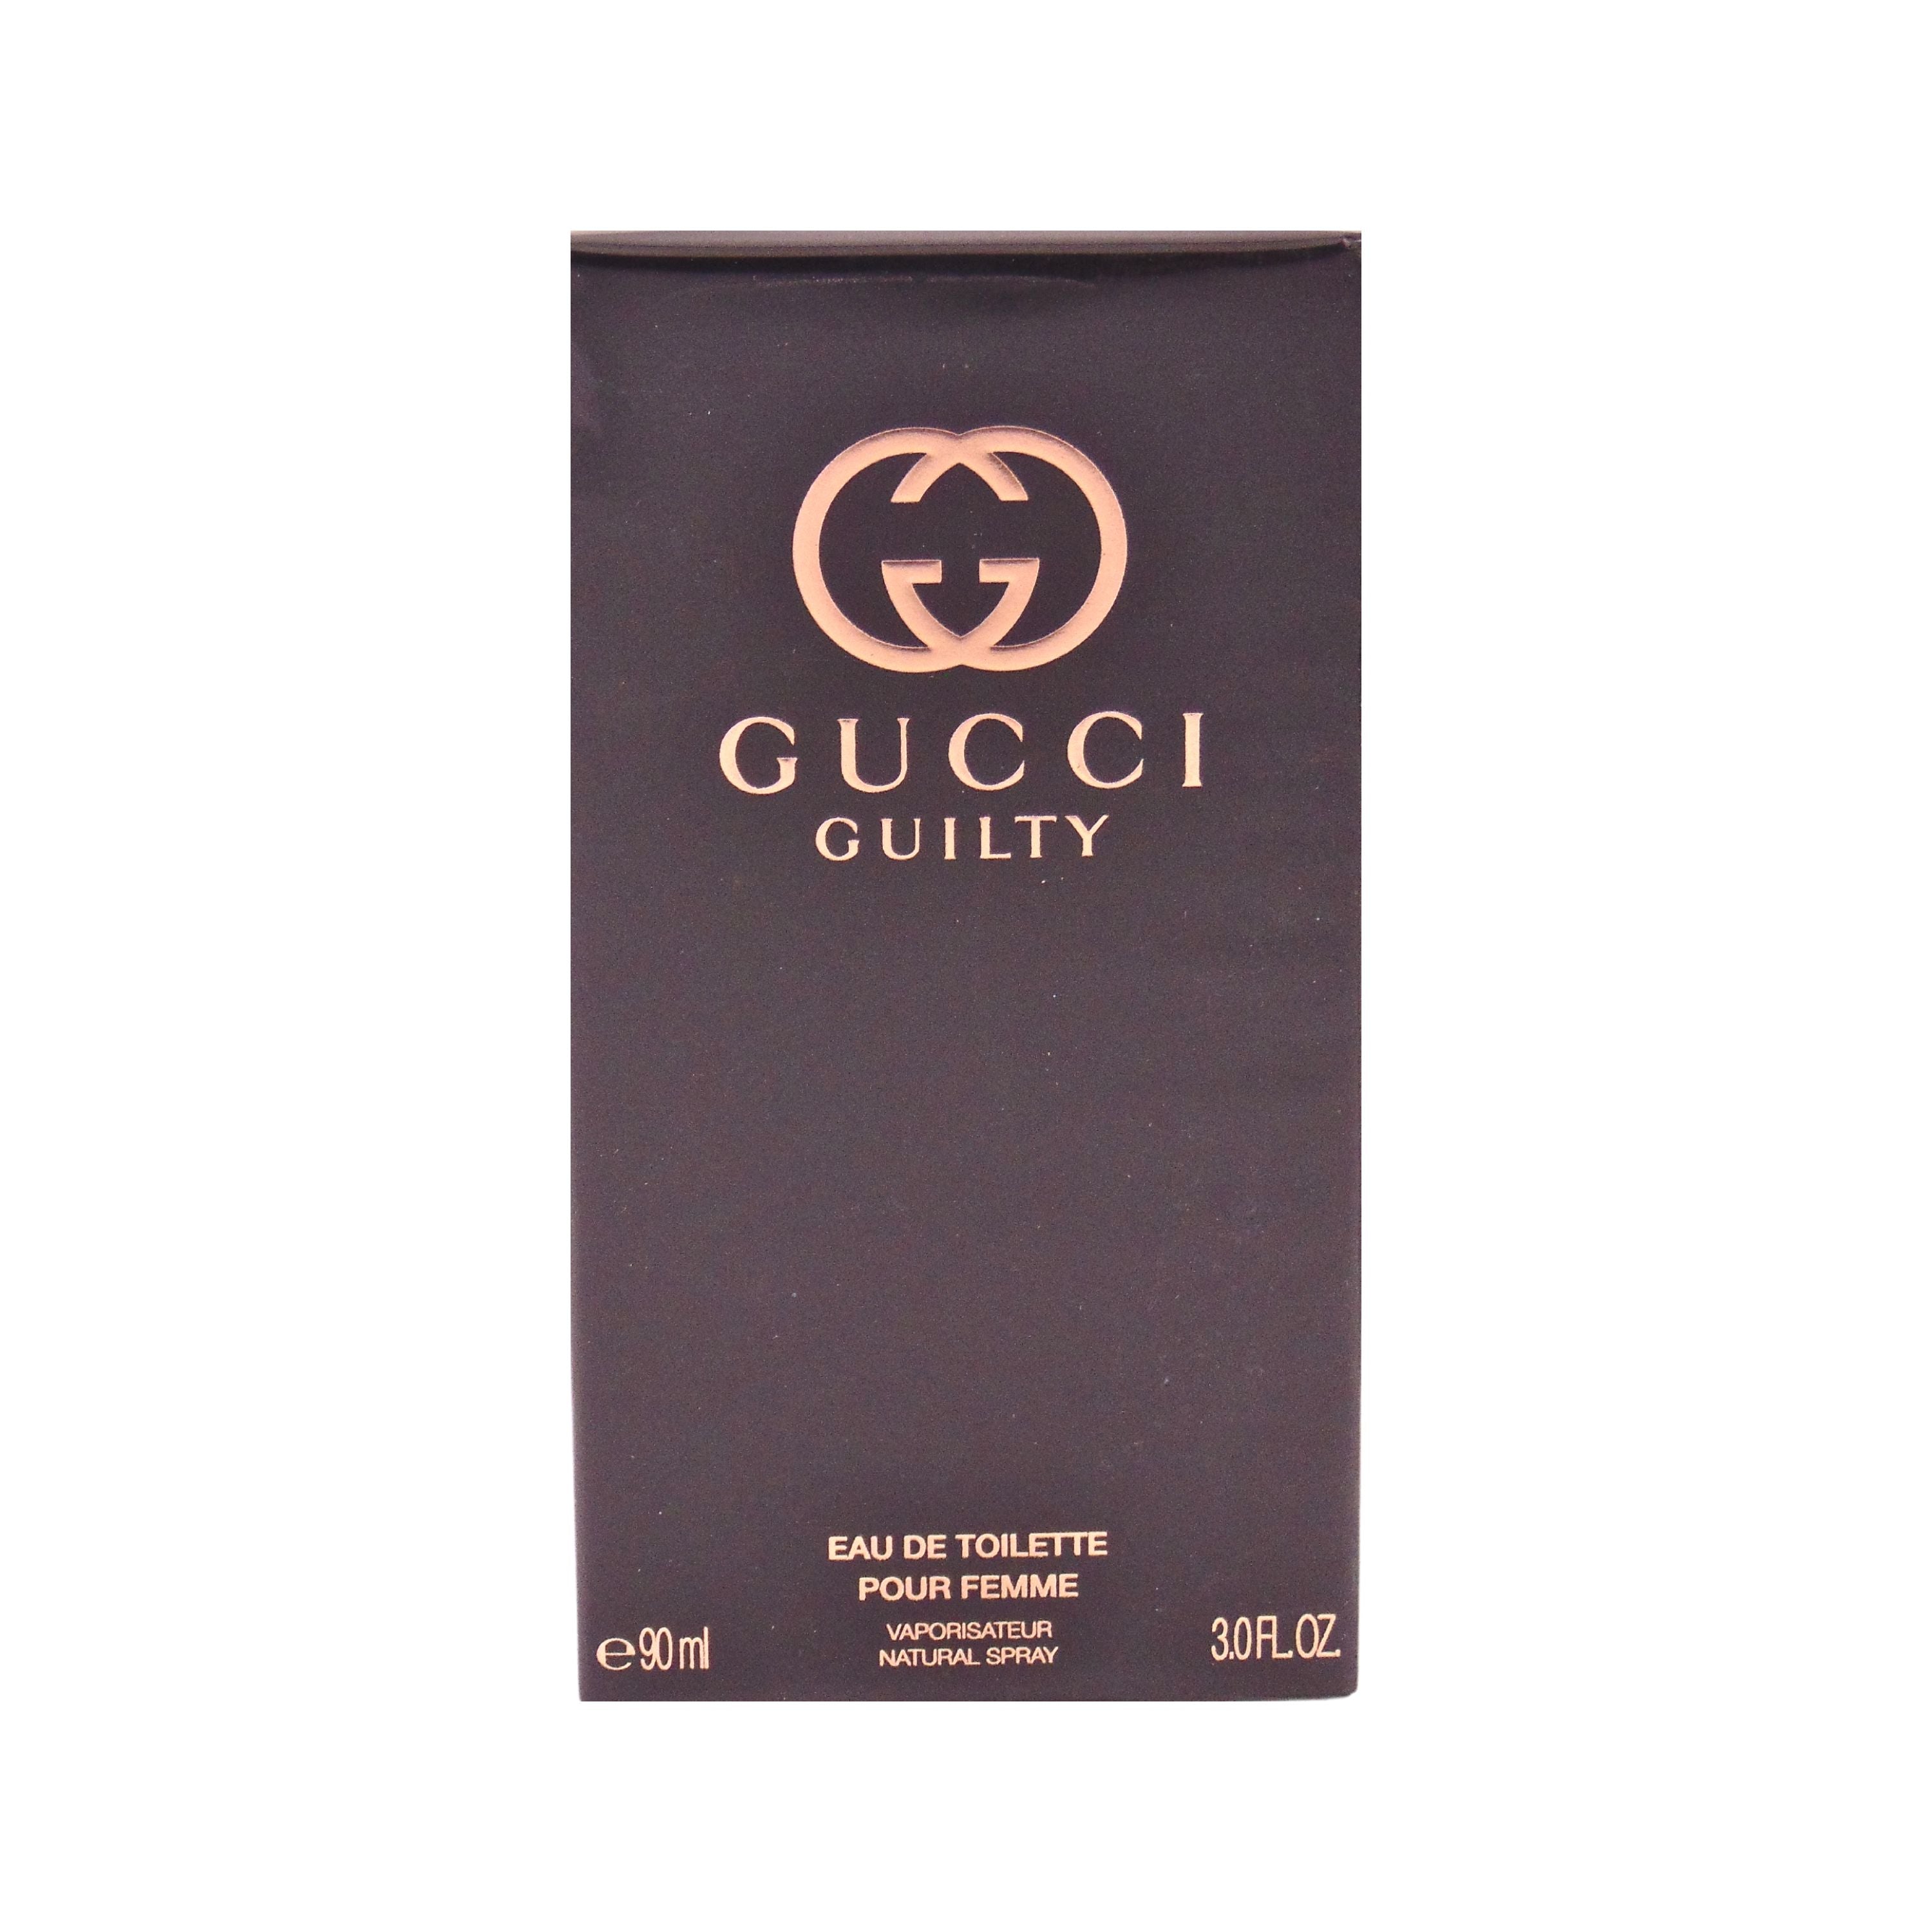 Gucci Gucci Guilty Eau de Toilette for Women